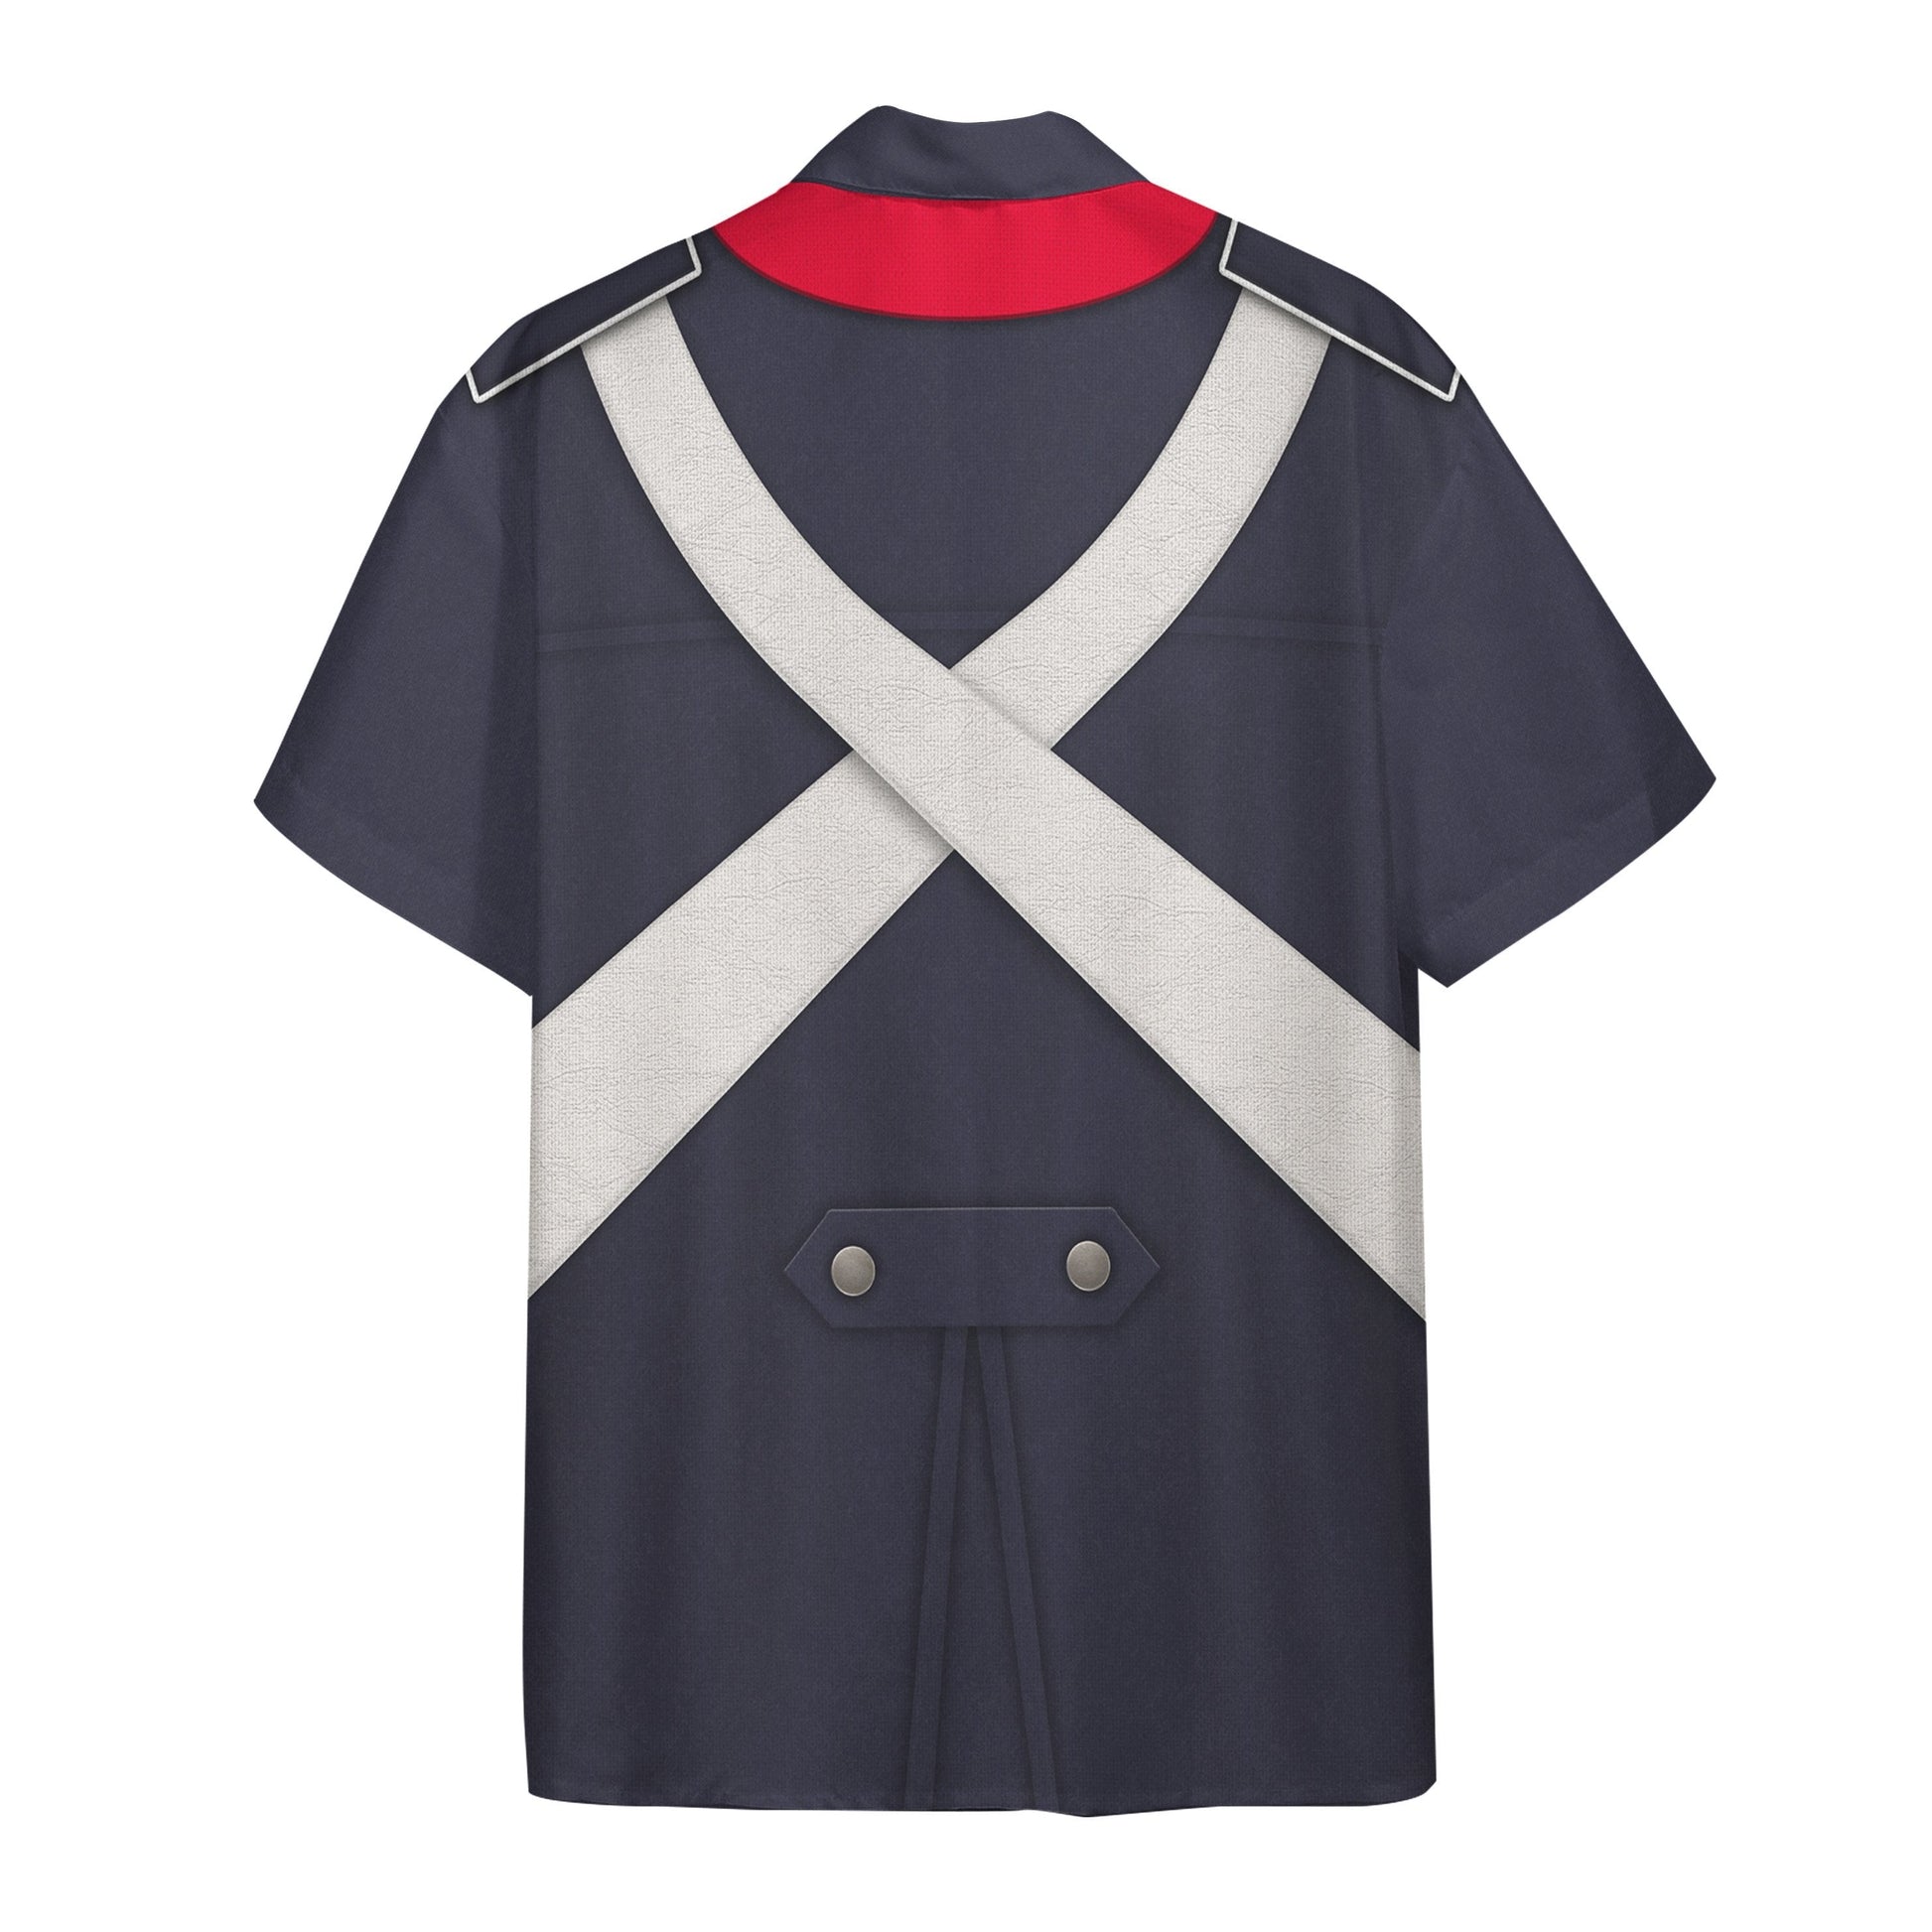 Gearhuman 3D French Light Infantry Custom Short Sleeve Shirt GV171133 Short Sleeve Shirt 